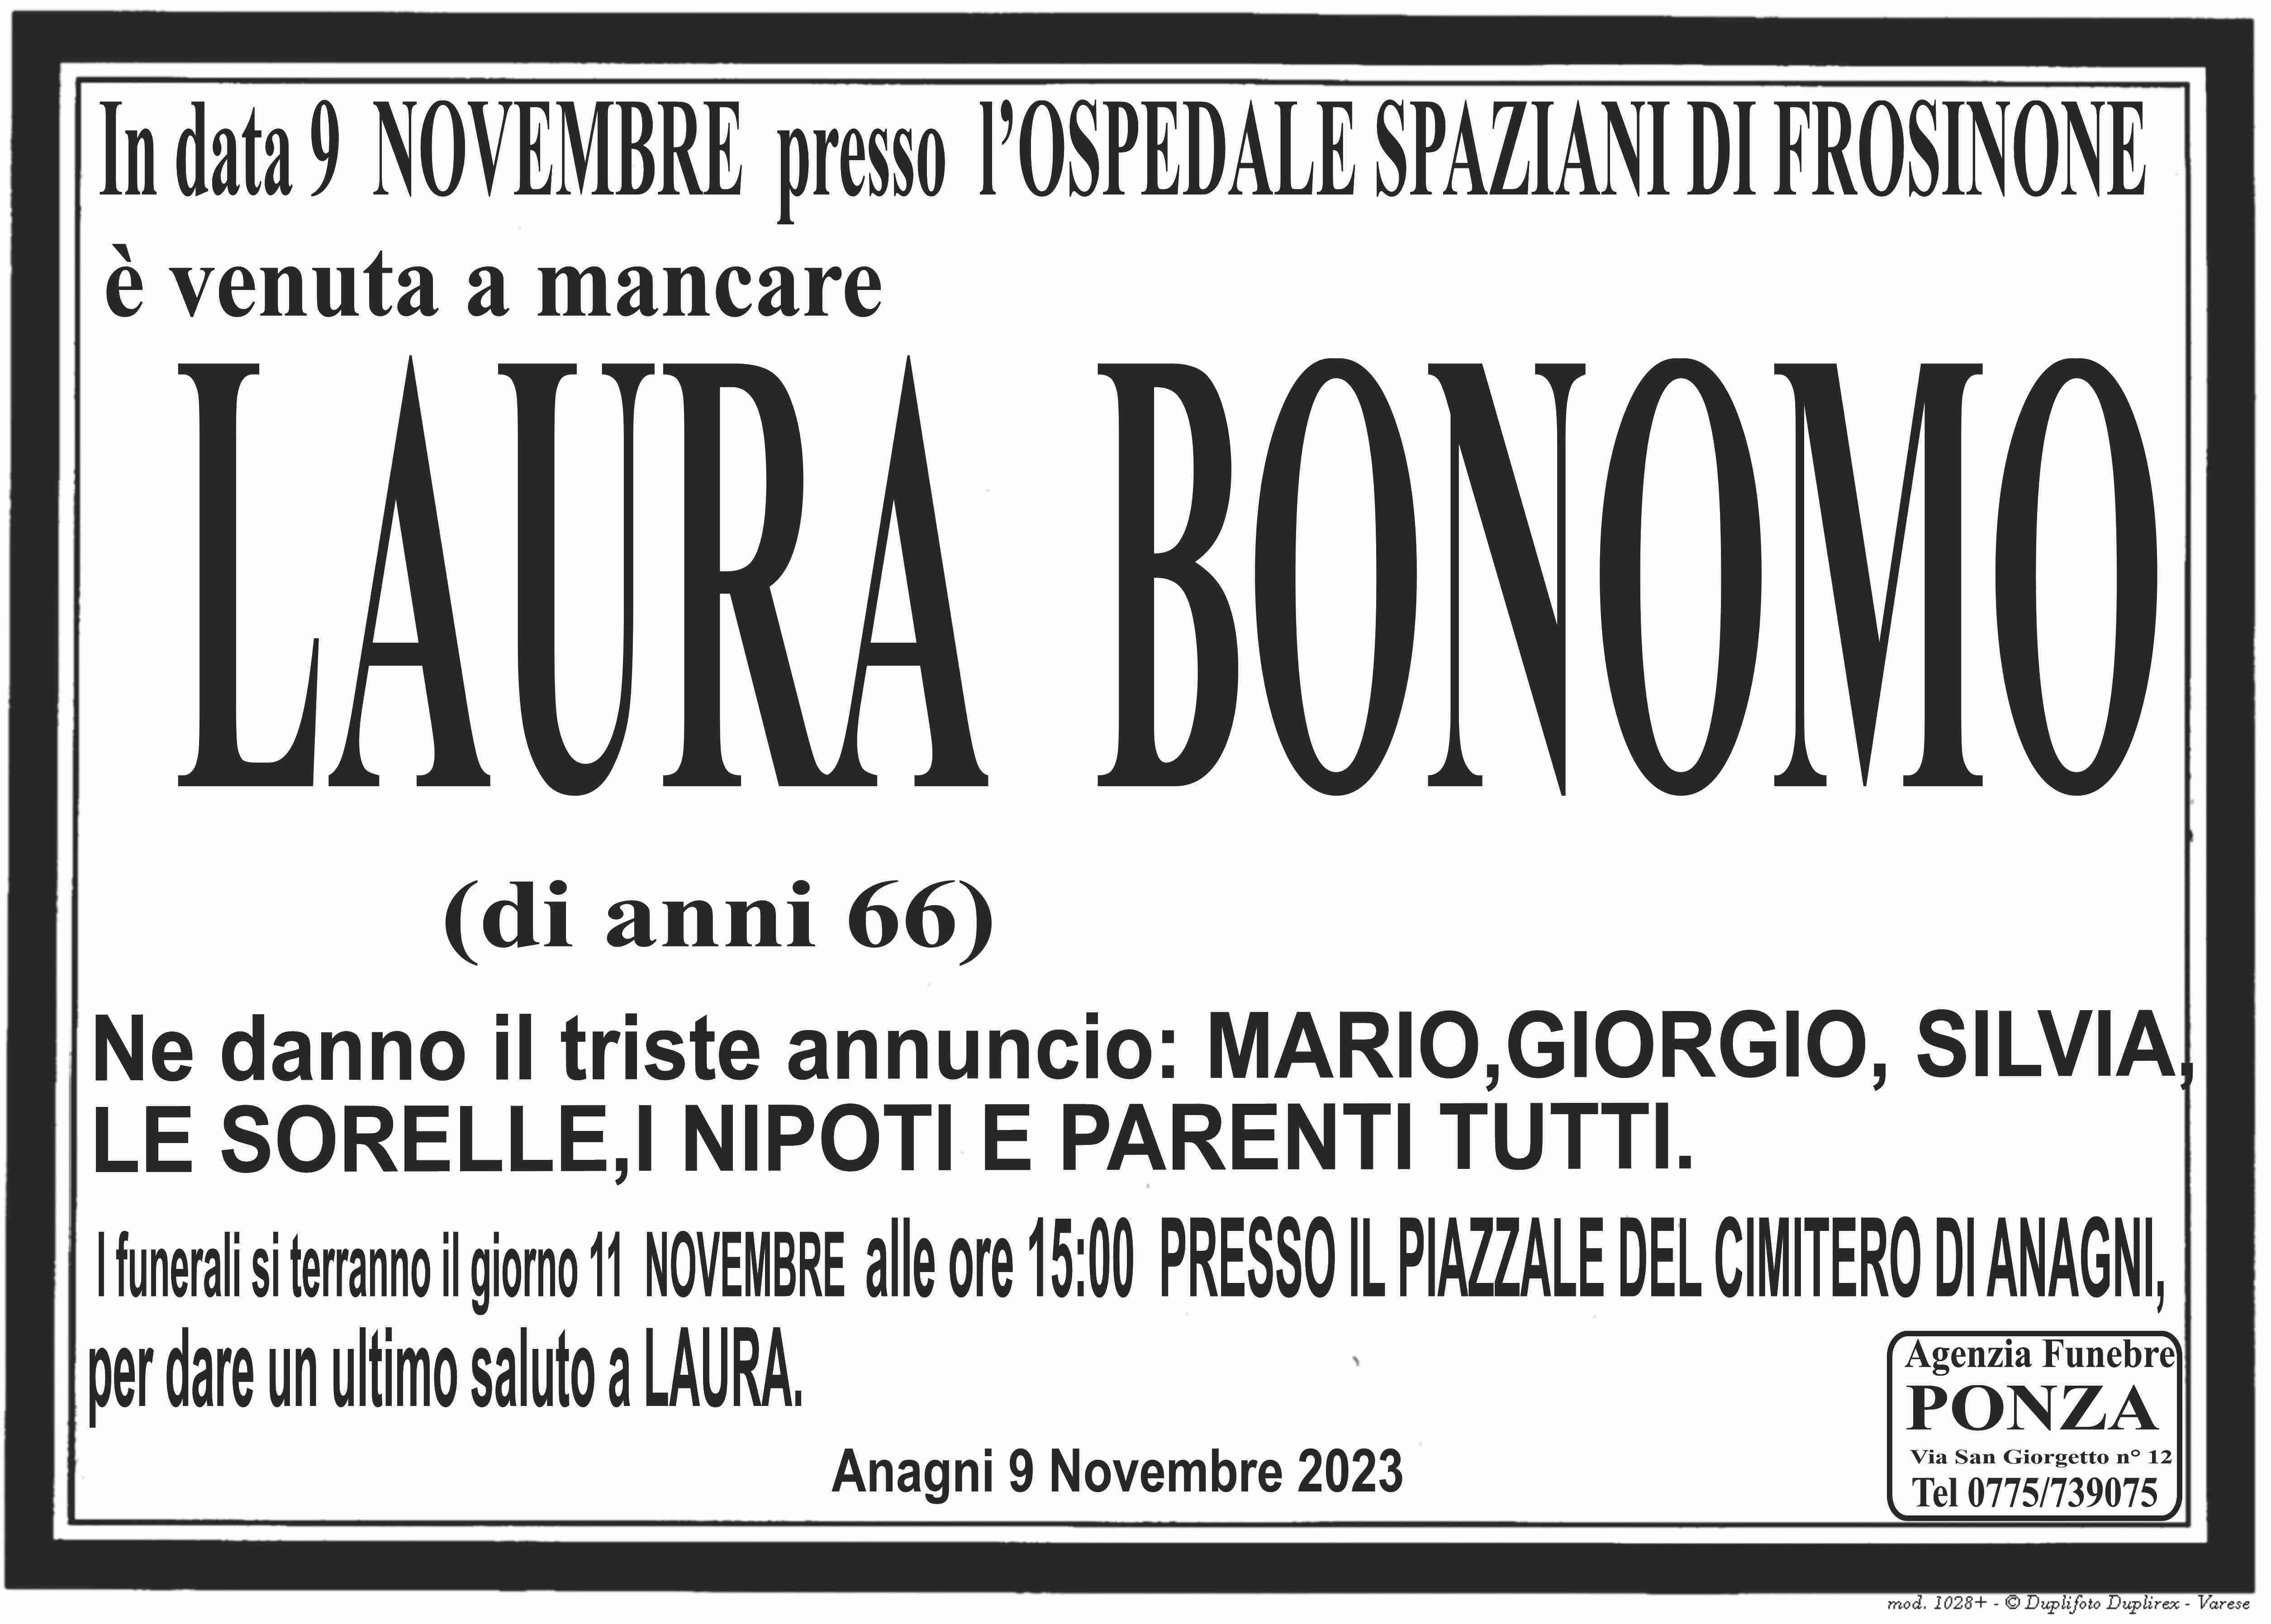 Laura Bonomo